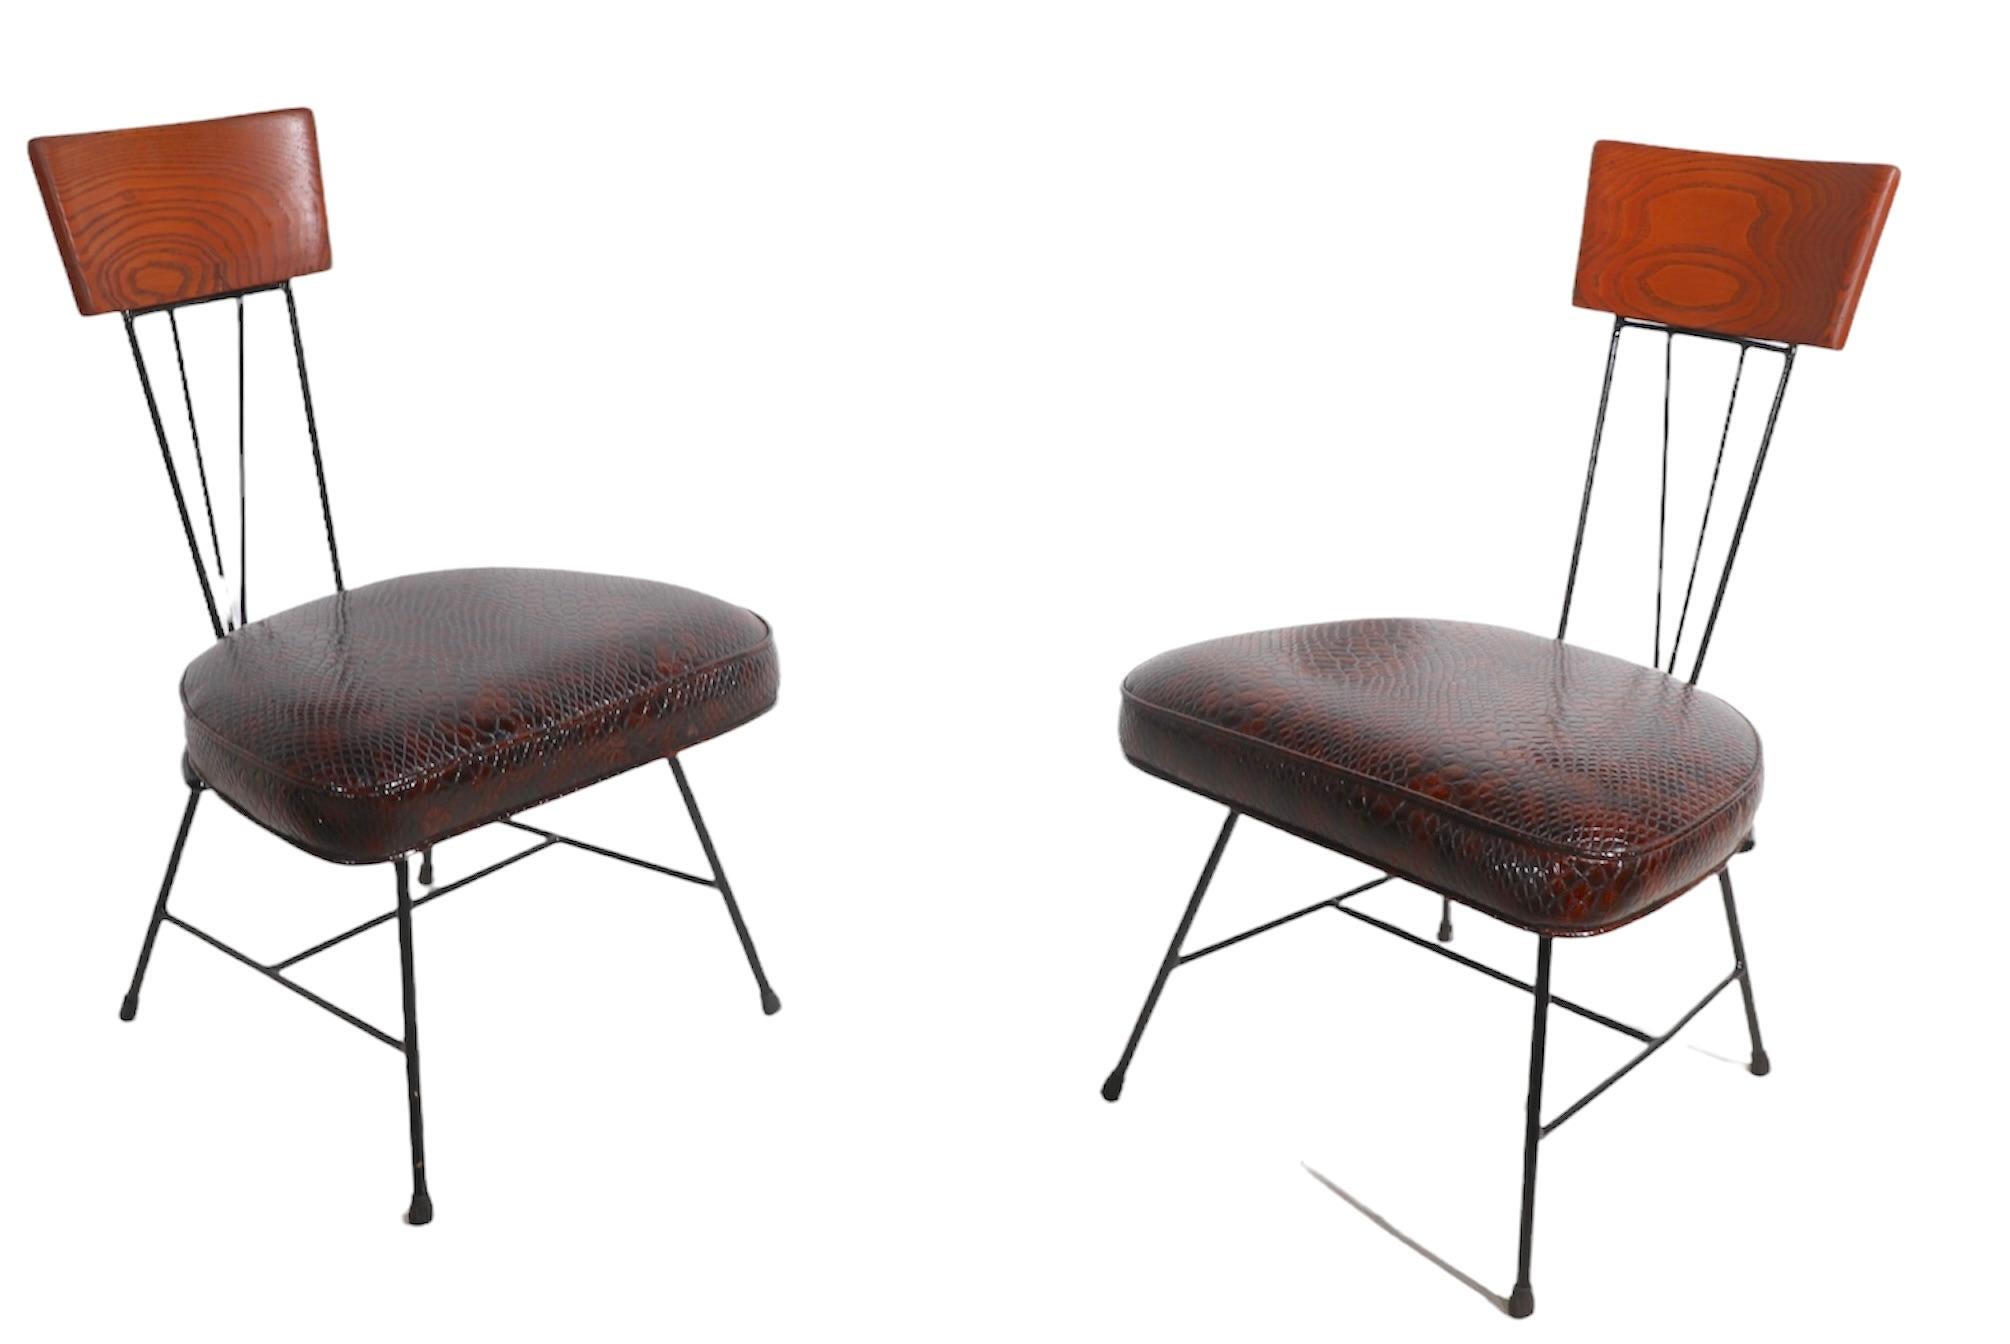 Paire de chaises latérales architecturales du milieu du siècle par le célèbre designer Richard McCarthy pour Selrite Furniture.
Ces chaises sont dotées d'un revêtement inhabituel et chic en faux reptile, d'un cadre en fer forgé, d'un dossier et